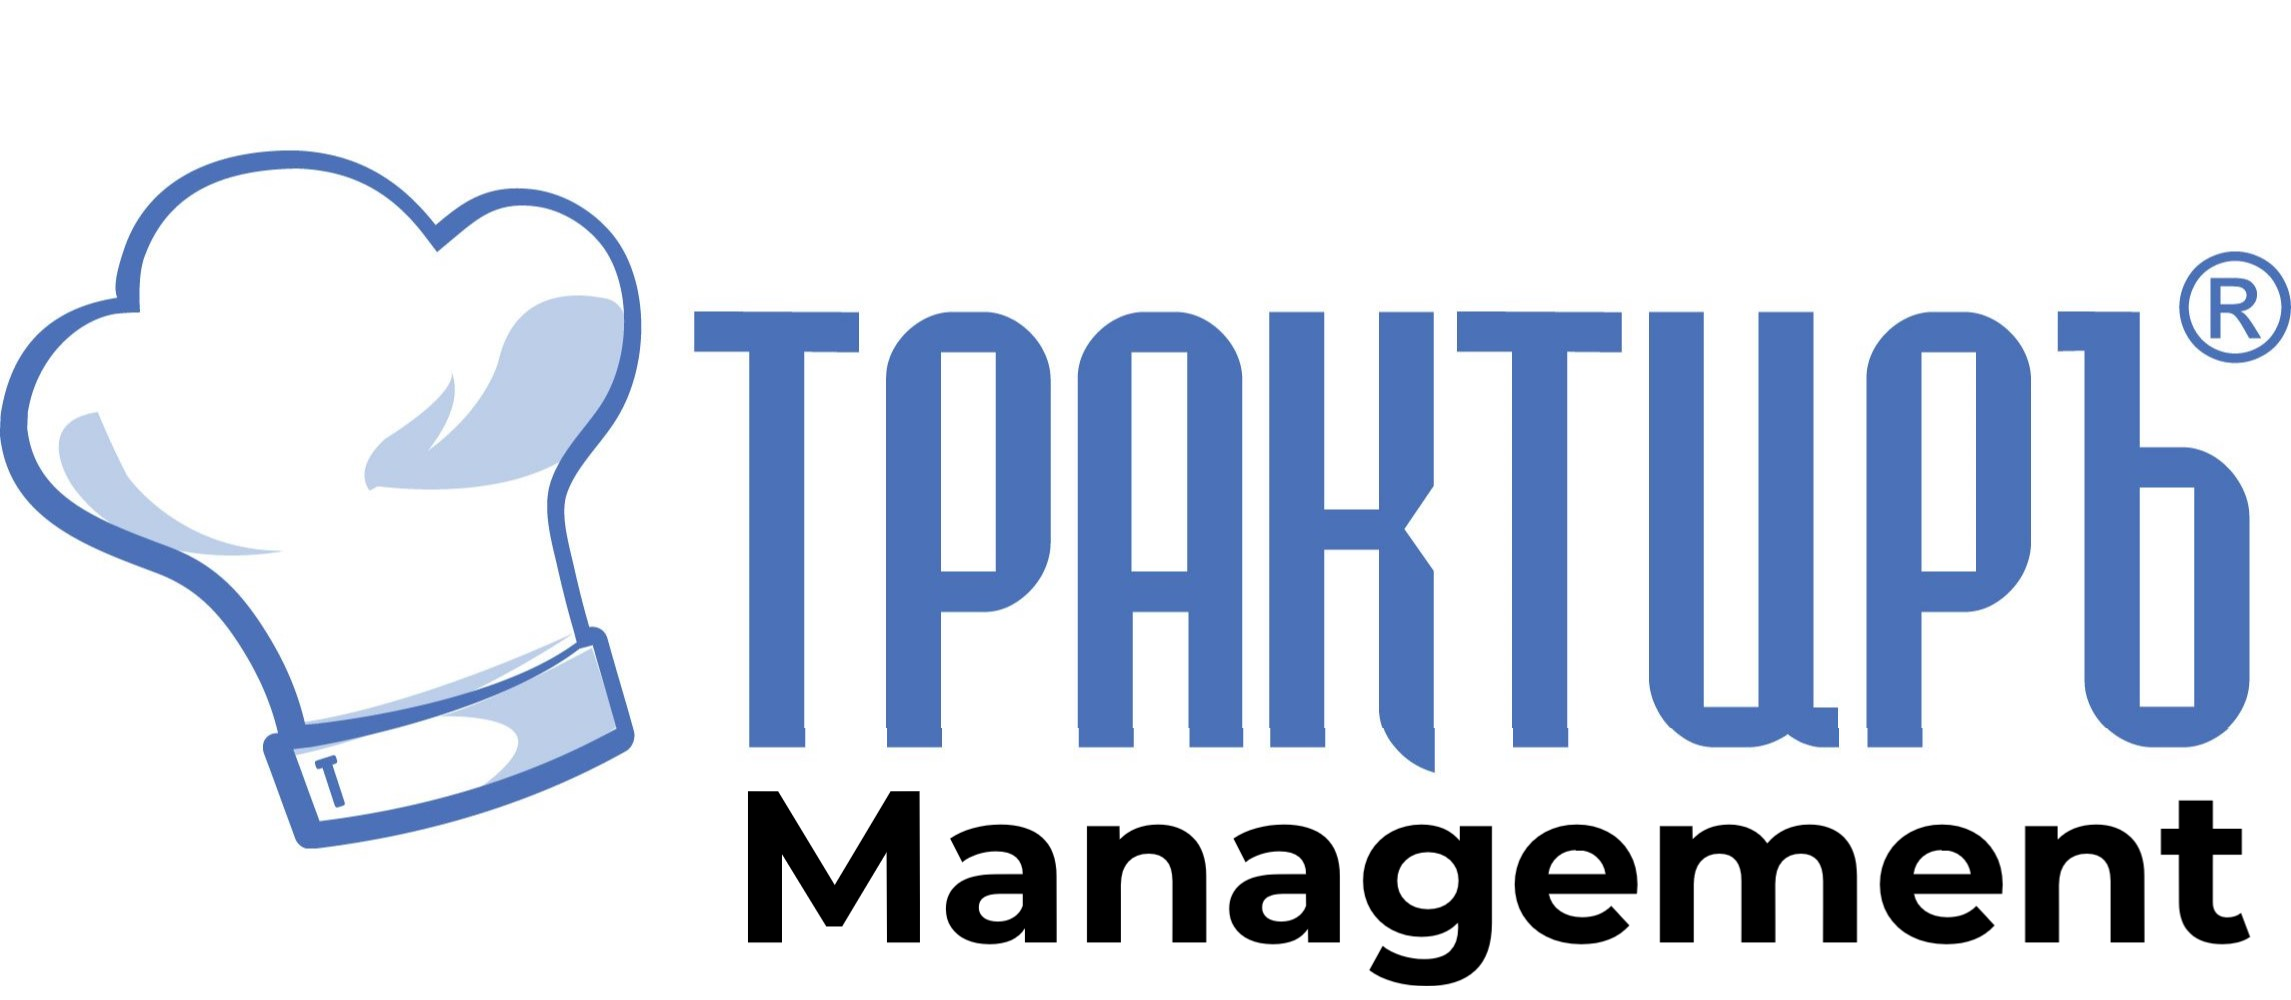 Трактиръ: Management в Подольске